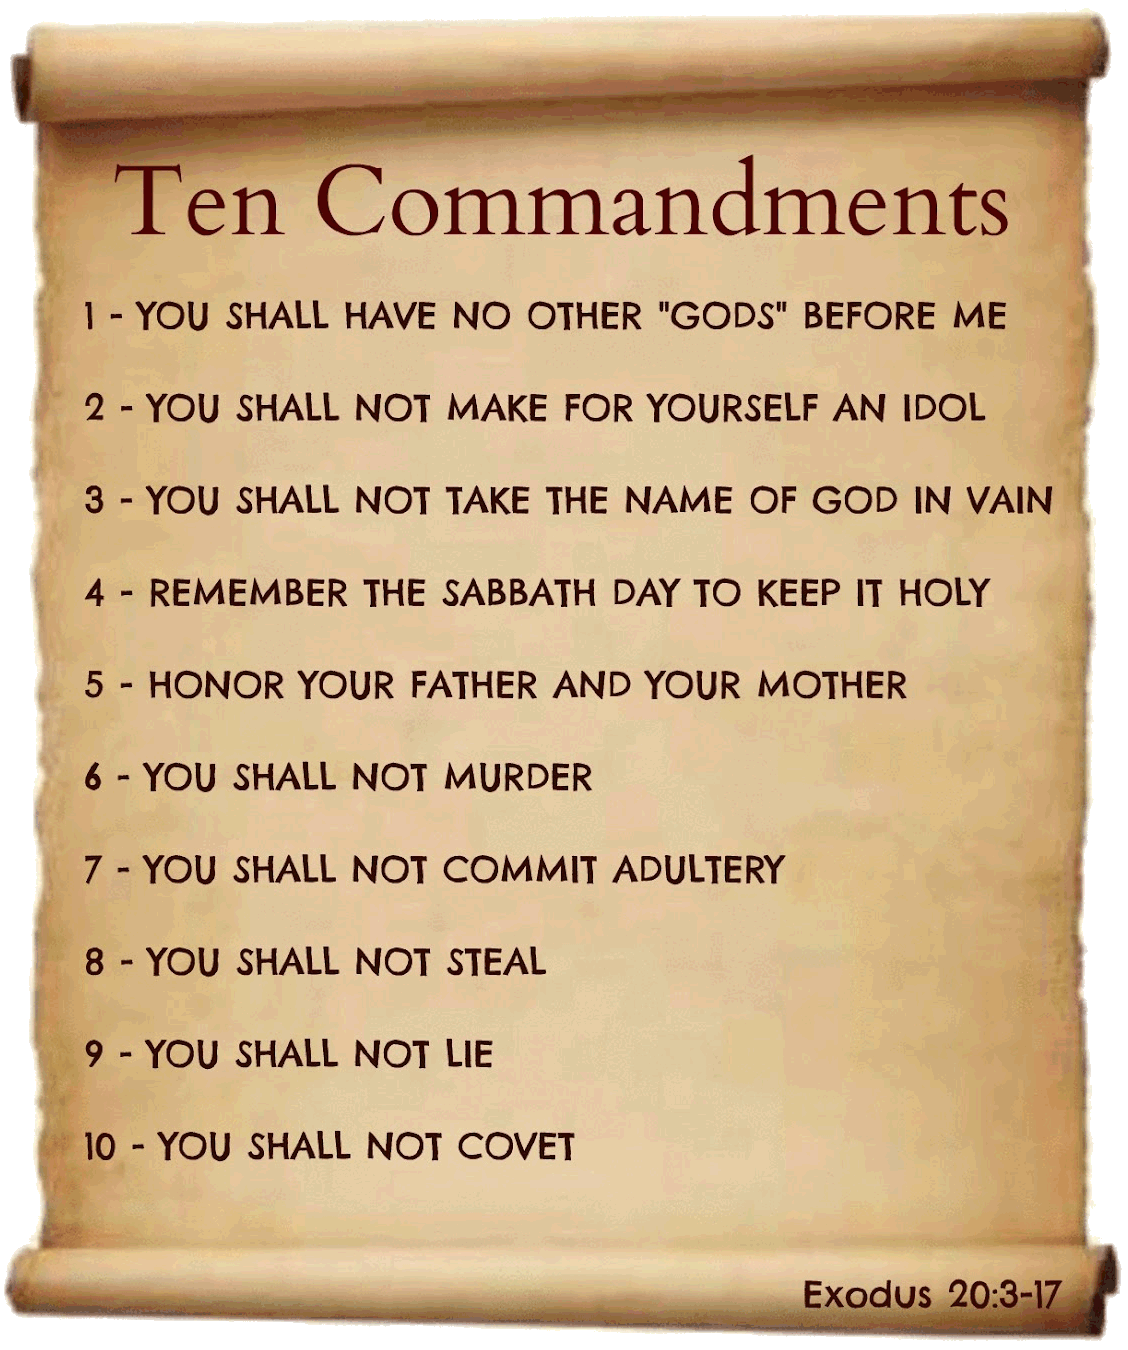 Photo: The Ten Commandments